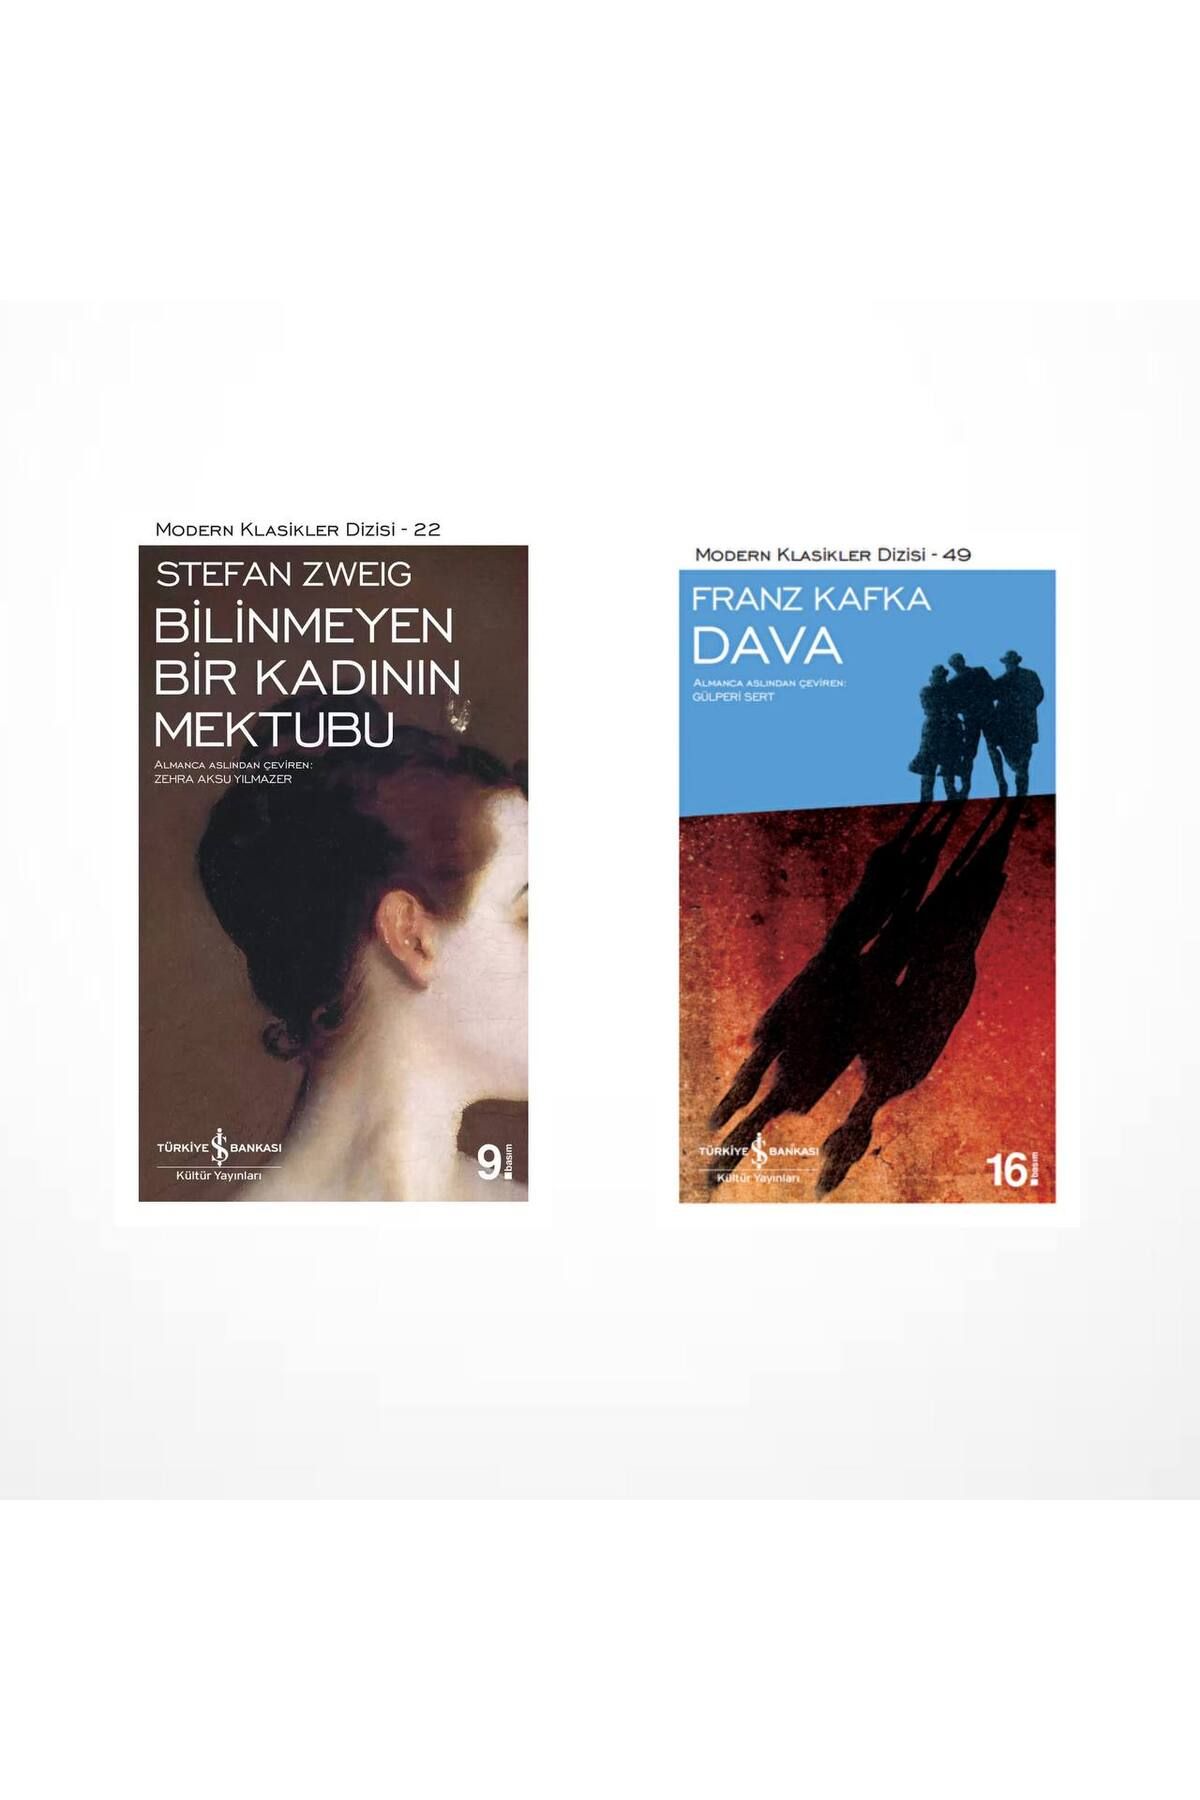 Türkiye İş Bankası Kültür Yayınları Bilinmeyen Bir Kadının Mektubu (Stefan Zweig) - Dava (Franz Kafka)